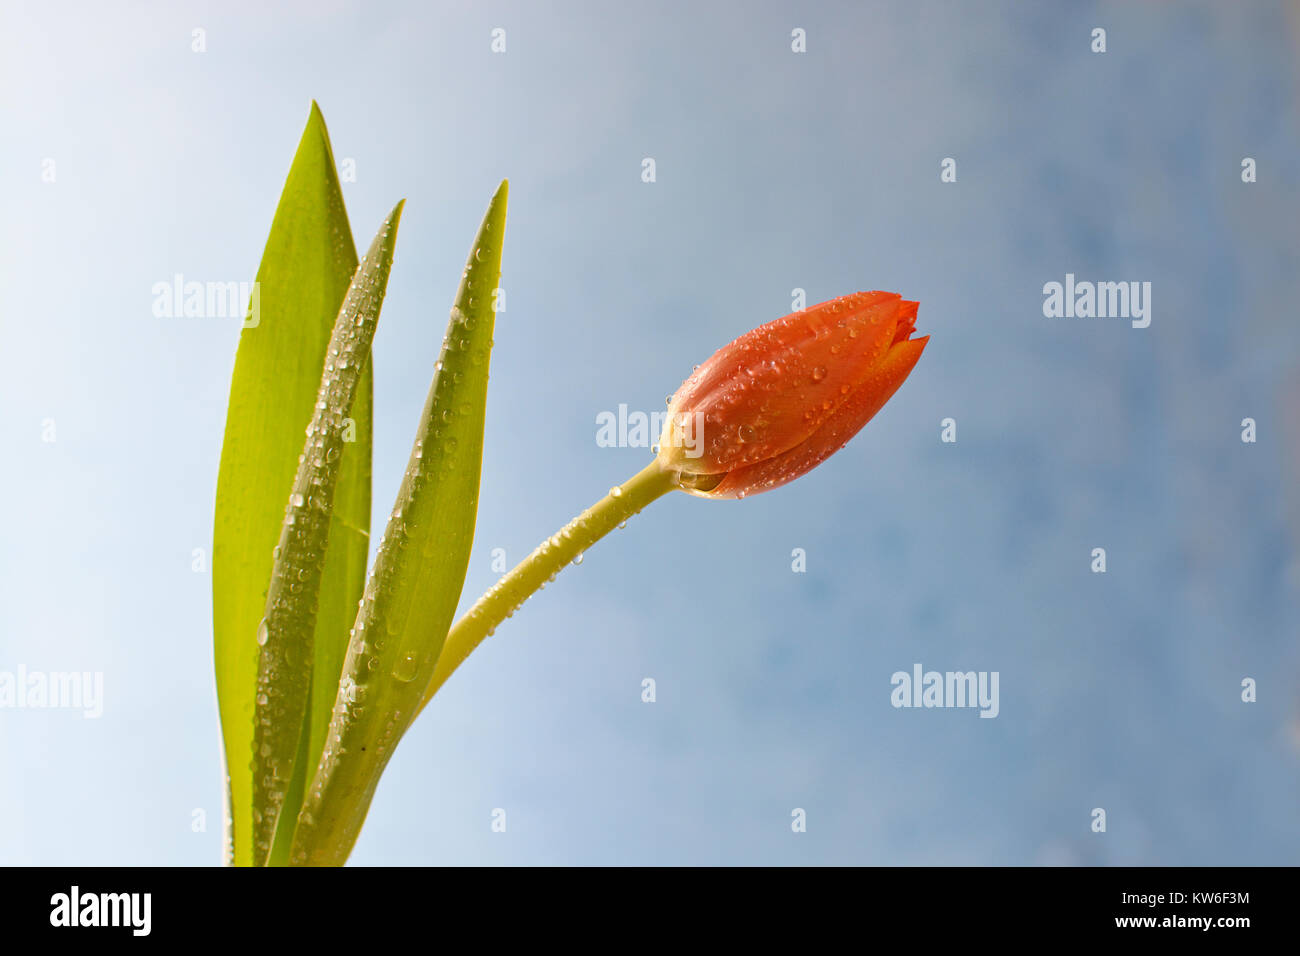 Photographie artistique simple, d'une tulipe orange posés gracieusement contre un fond bleu moderne. Banque D'Images